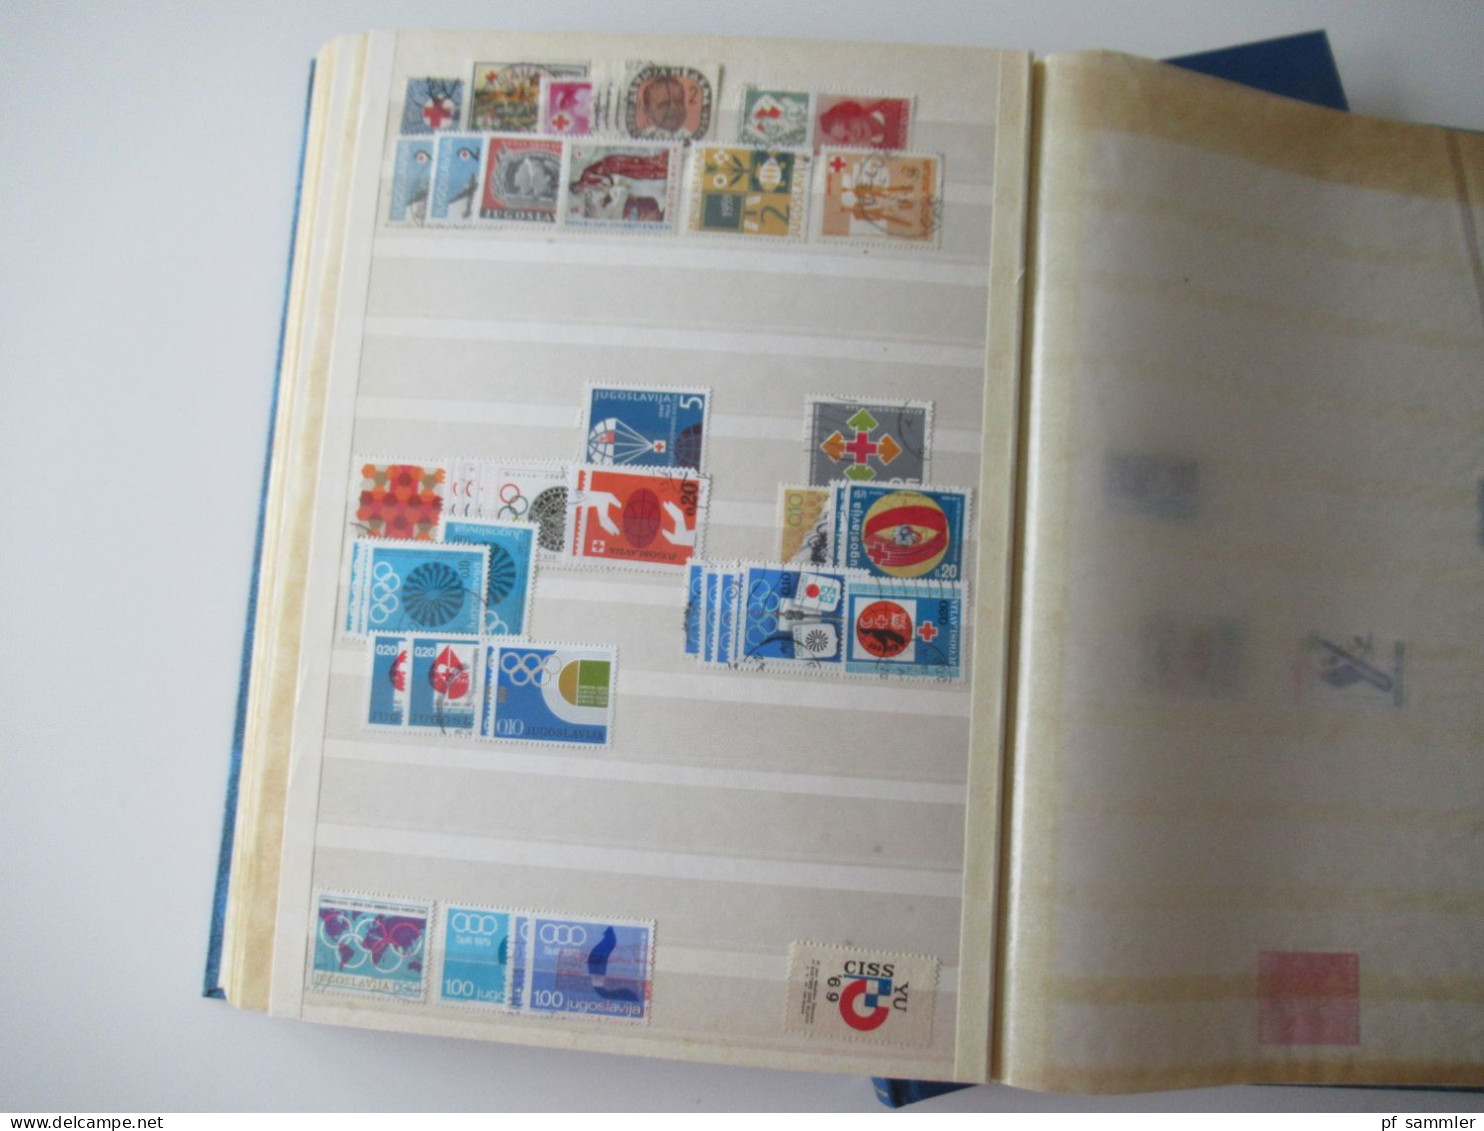 Sammlung / interessante Alben / Lagerbücher Europa Jugoslawien ab SHS - 2001 sehr viele gestempelte Marken / Fundgrube